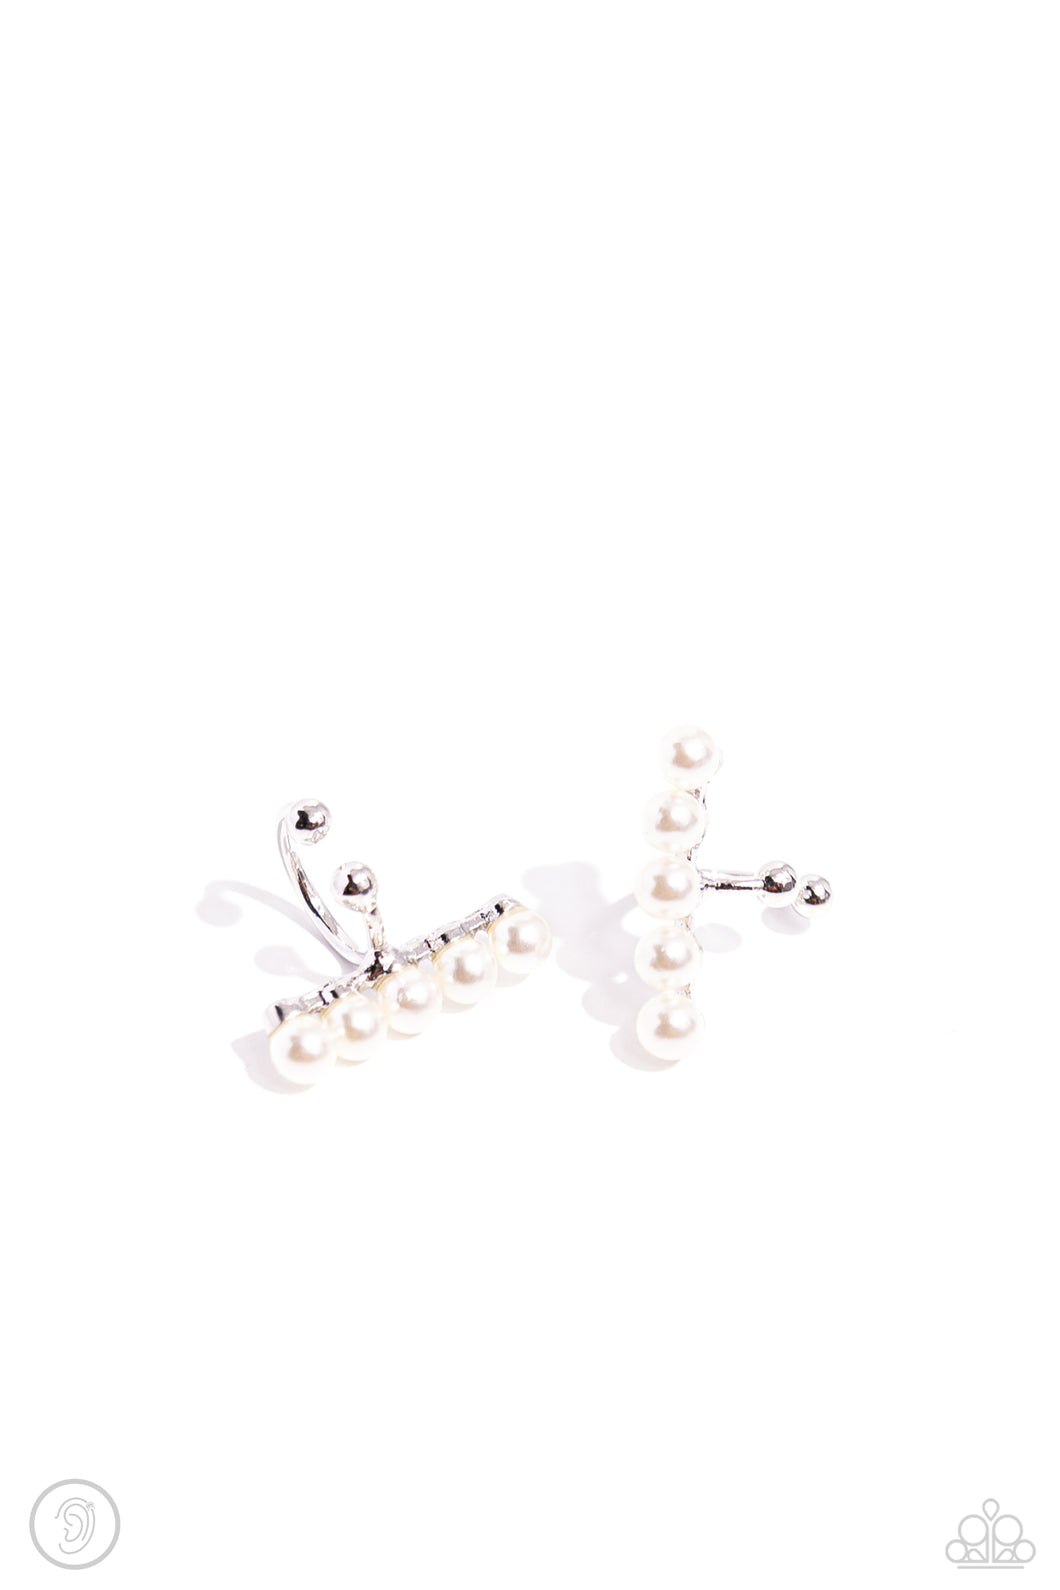 CUFF Love - White (Pearl) Cuff Earring